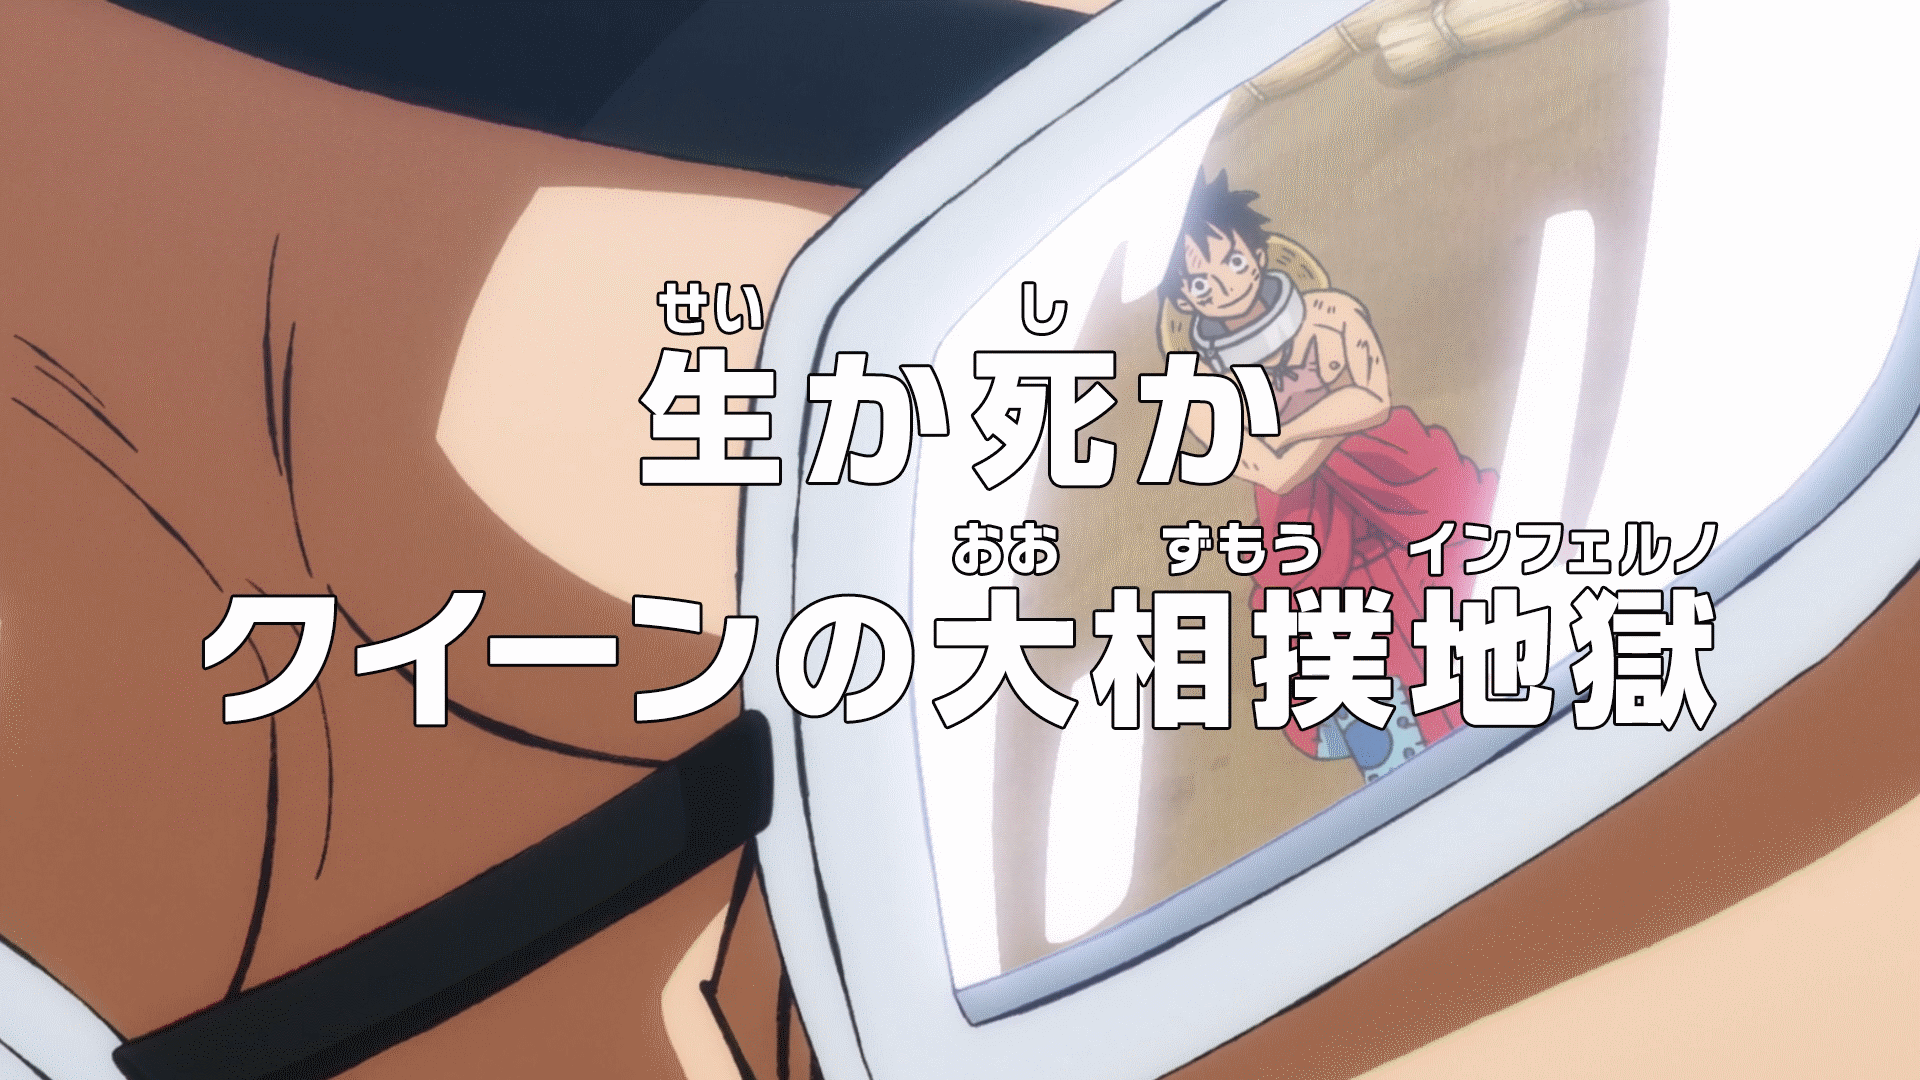 One Piece/Episode 326 - Anime Bath Scene Wiki